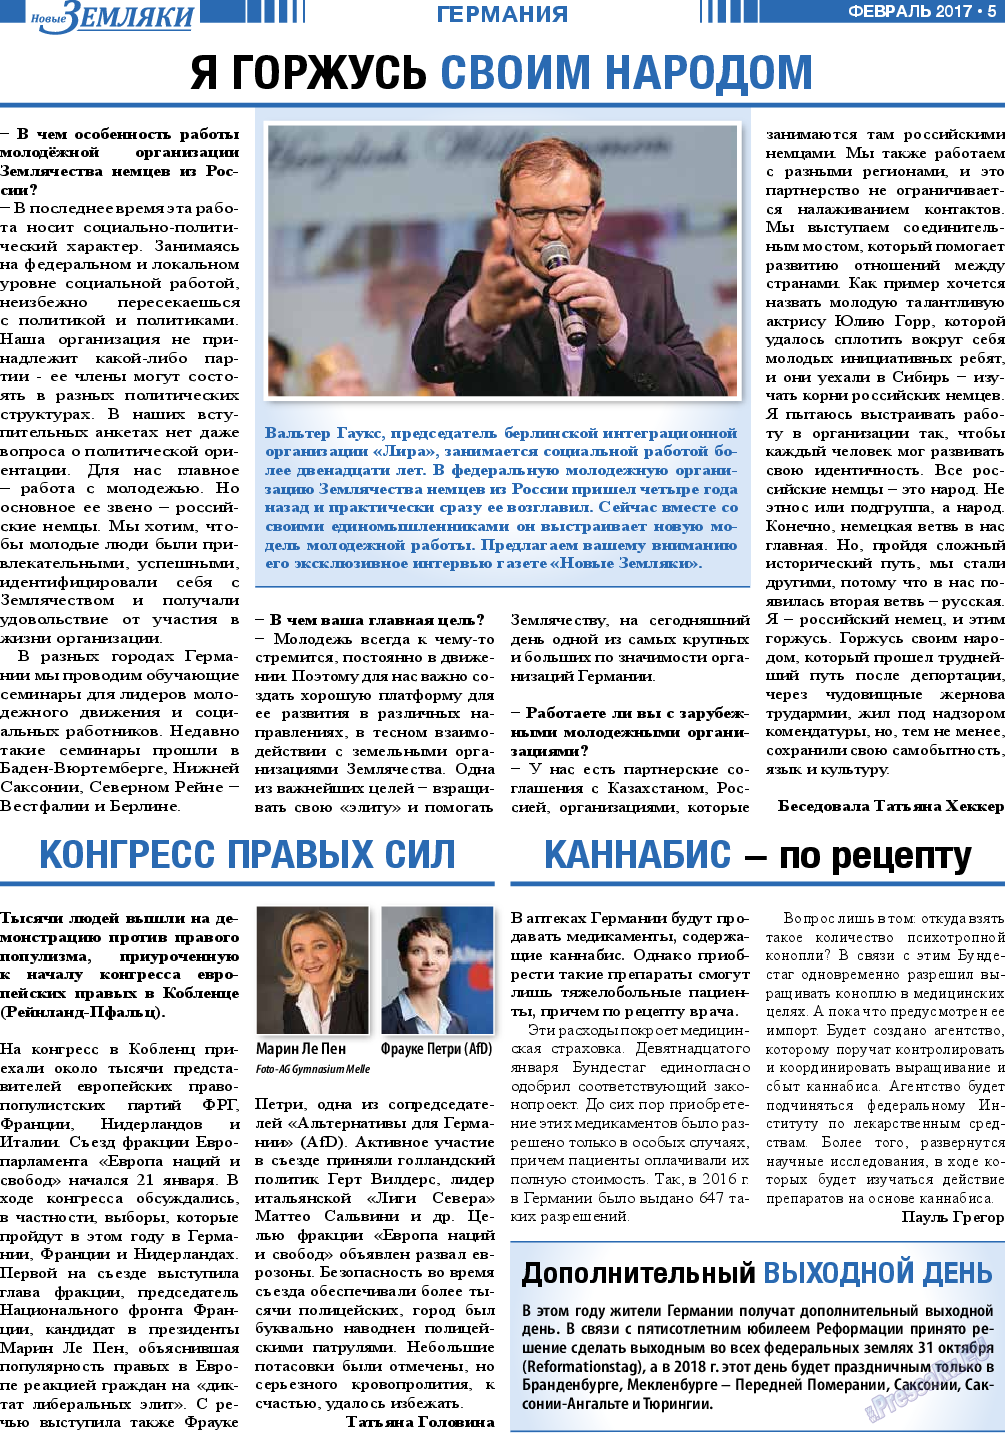 Новые Земляки, газета. 2017 №2 стр.5